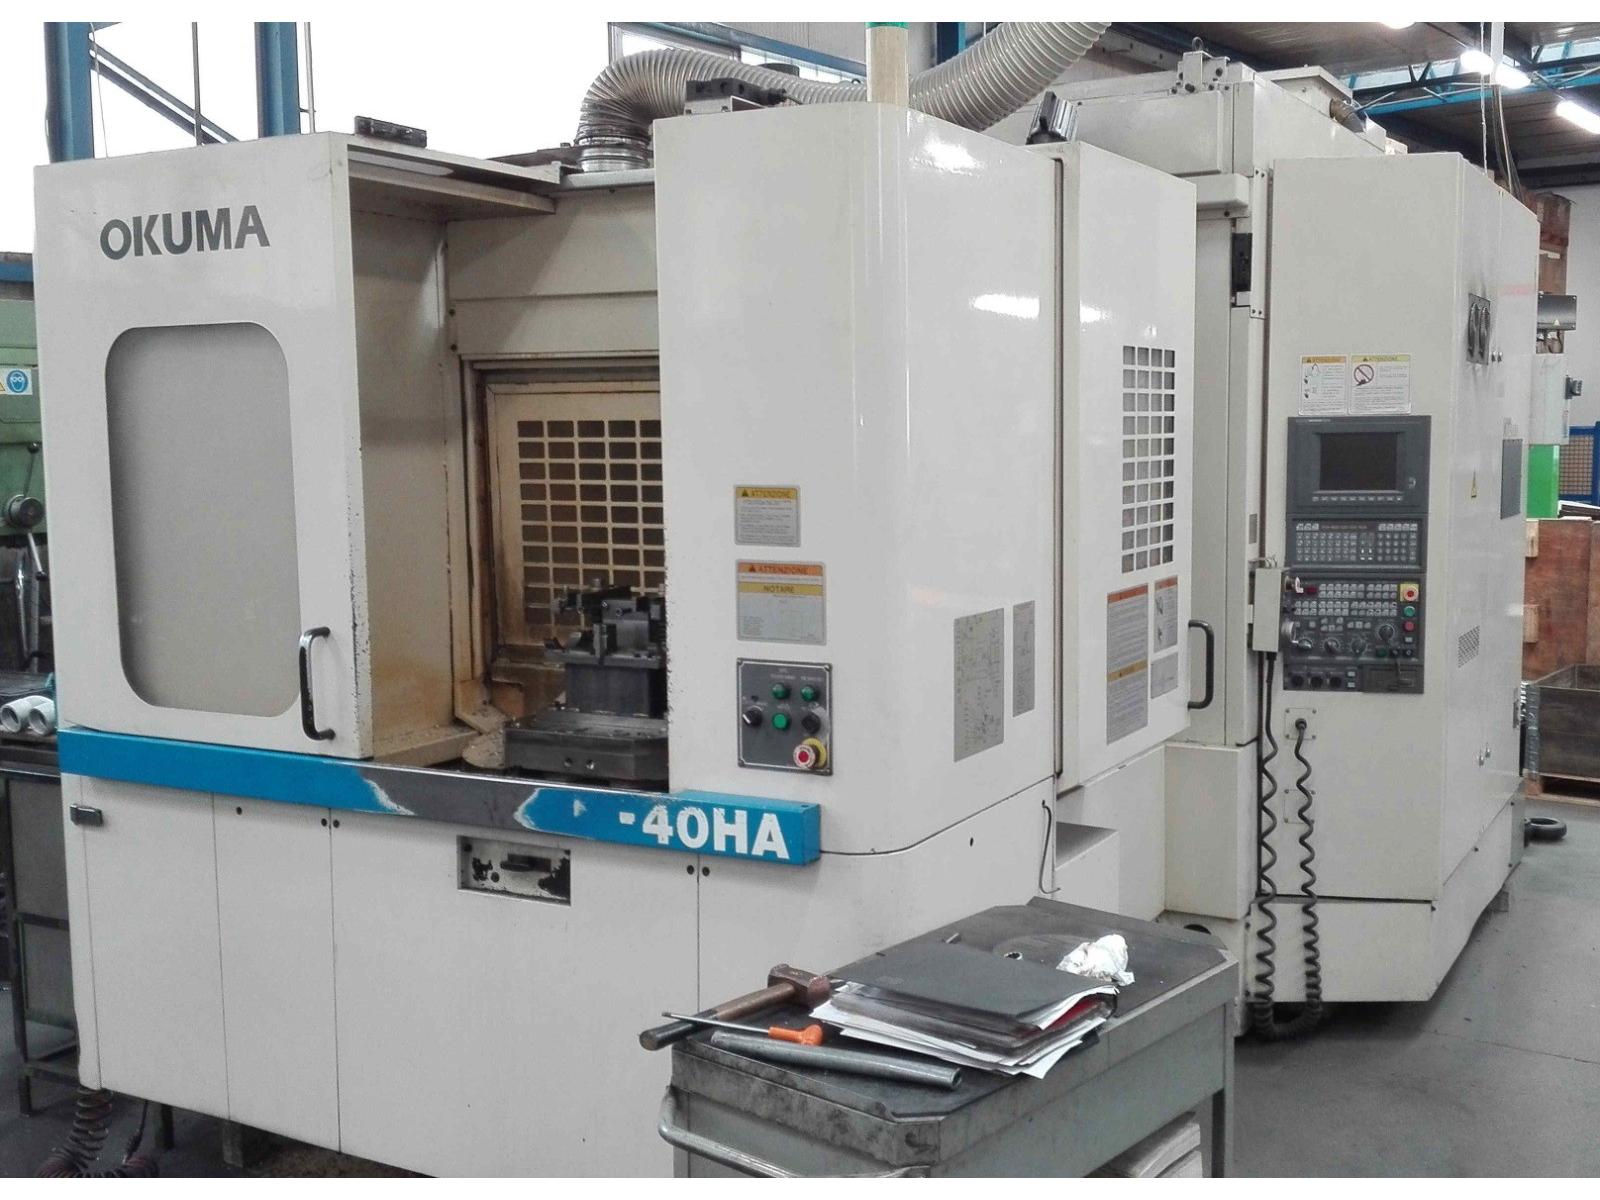 Centro di lavoro marca Okuma modello MX 40 HA